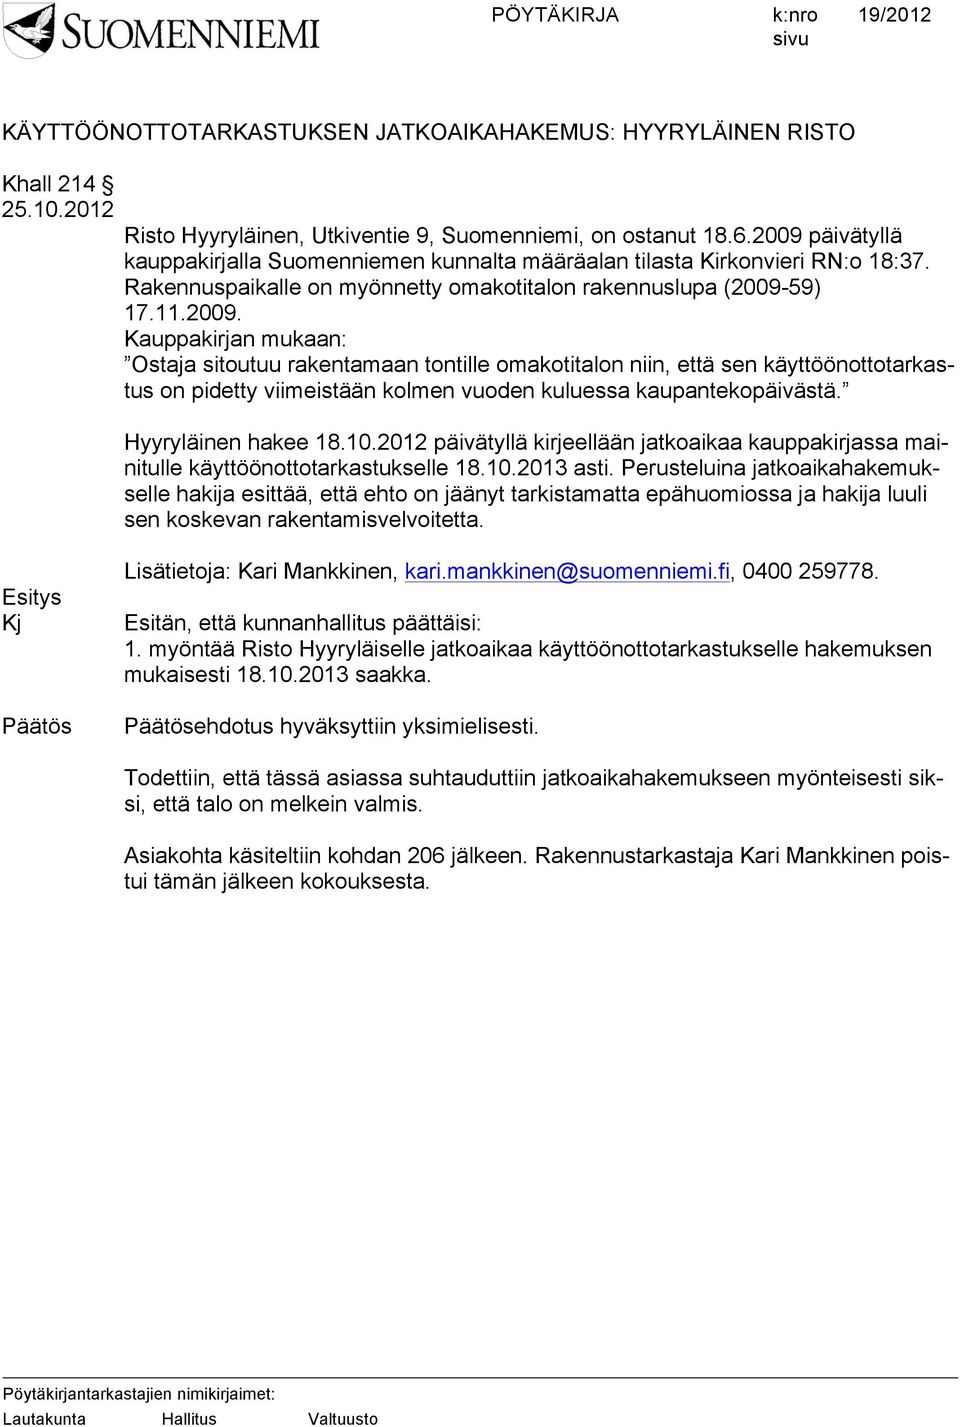 Hyyryläinen hakee 18.10.2012 päivätyllä kirjeellään jatkoaikaa kauppakirjassa mainitulle käyttöönottotarkastukselle 18.10.2013 asti.